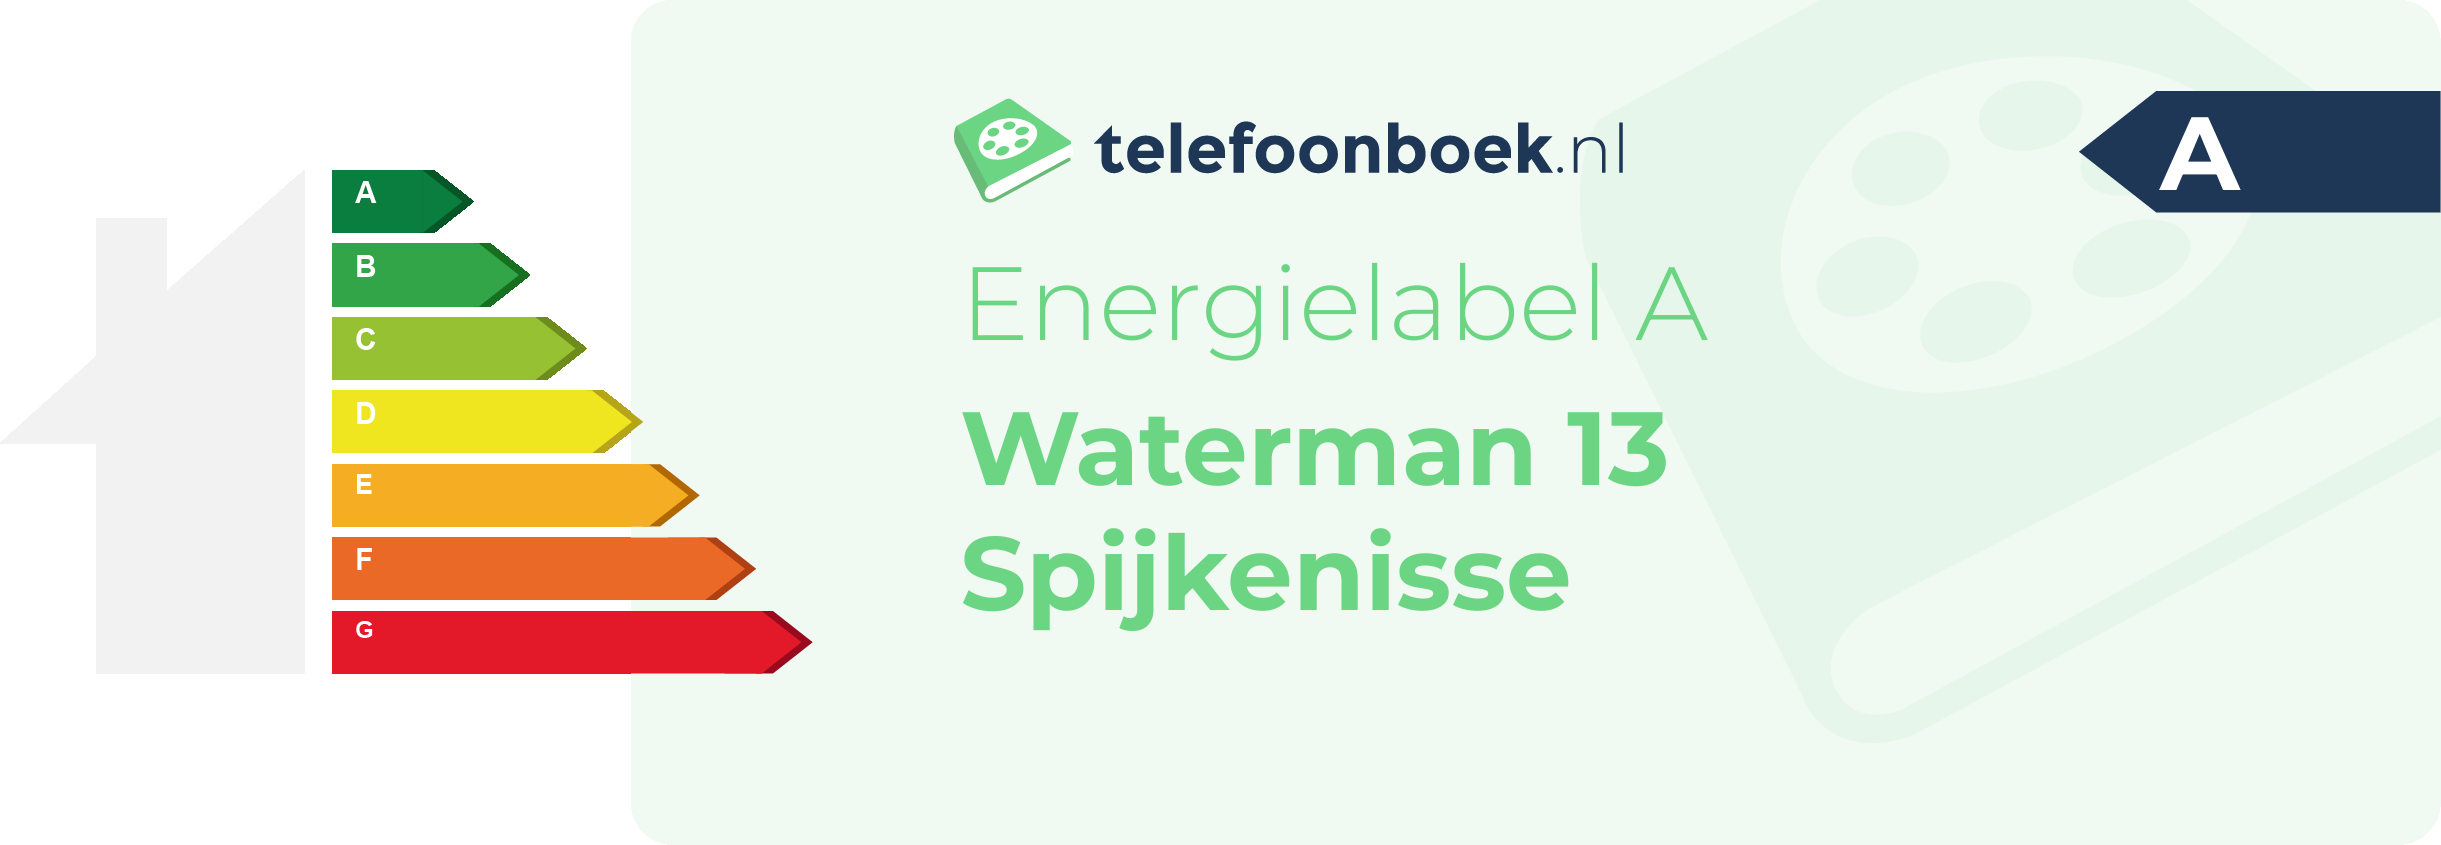 Energielabel Waterman 13 Spijkenisse